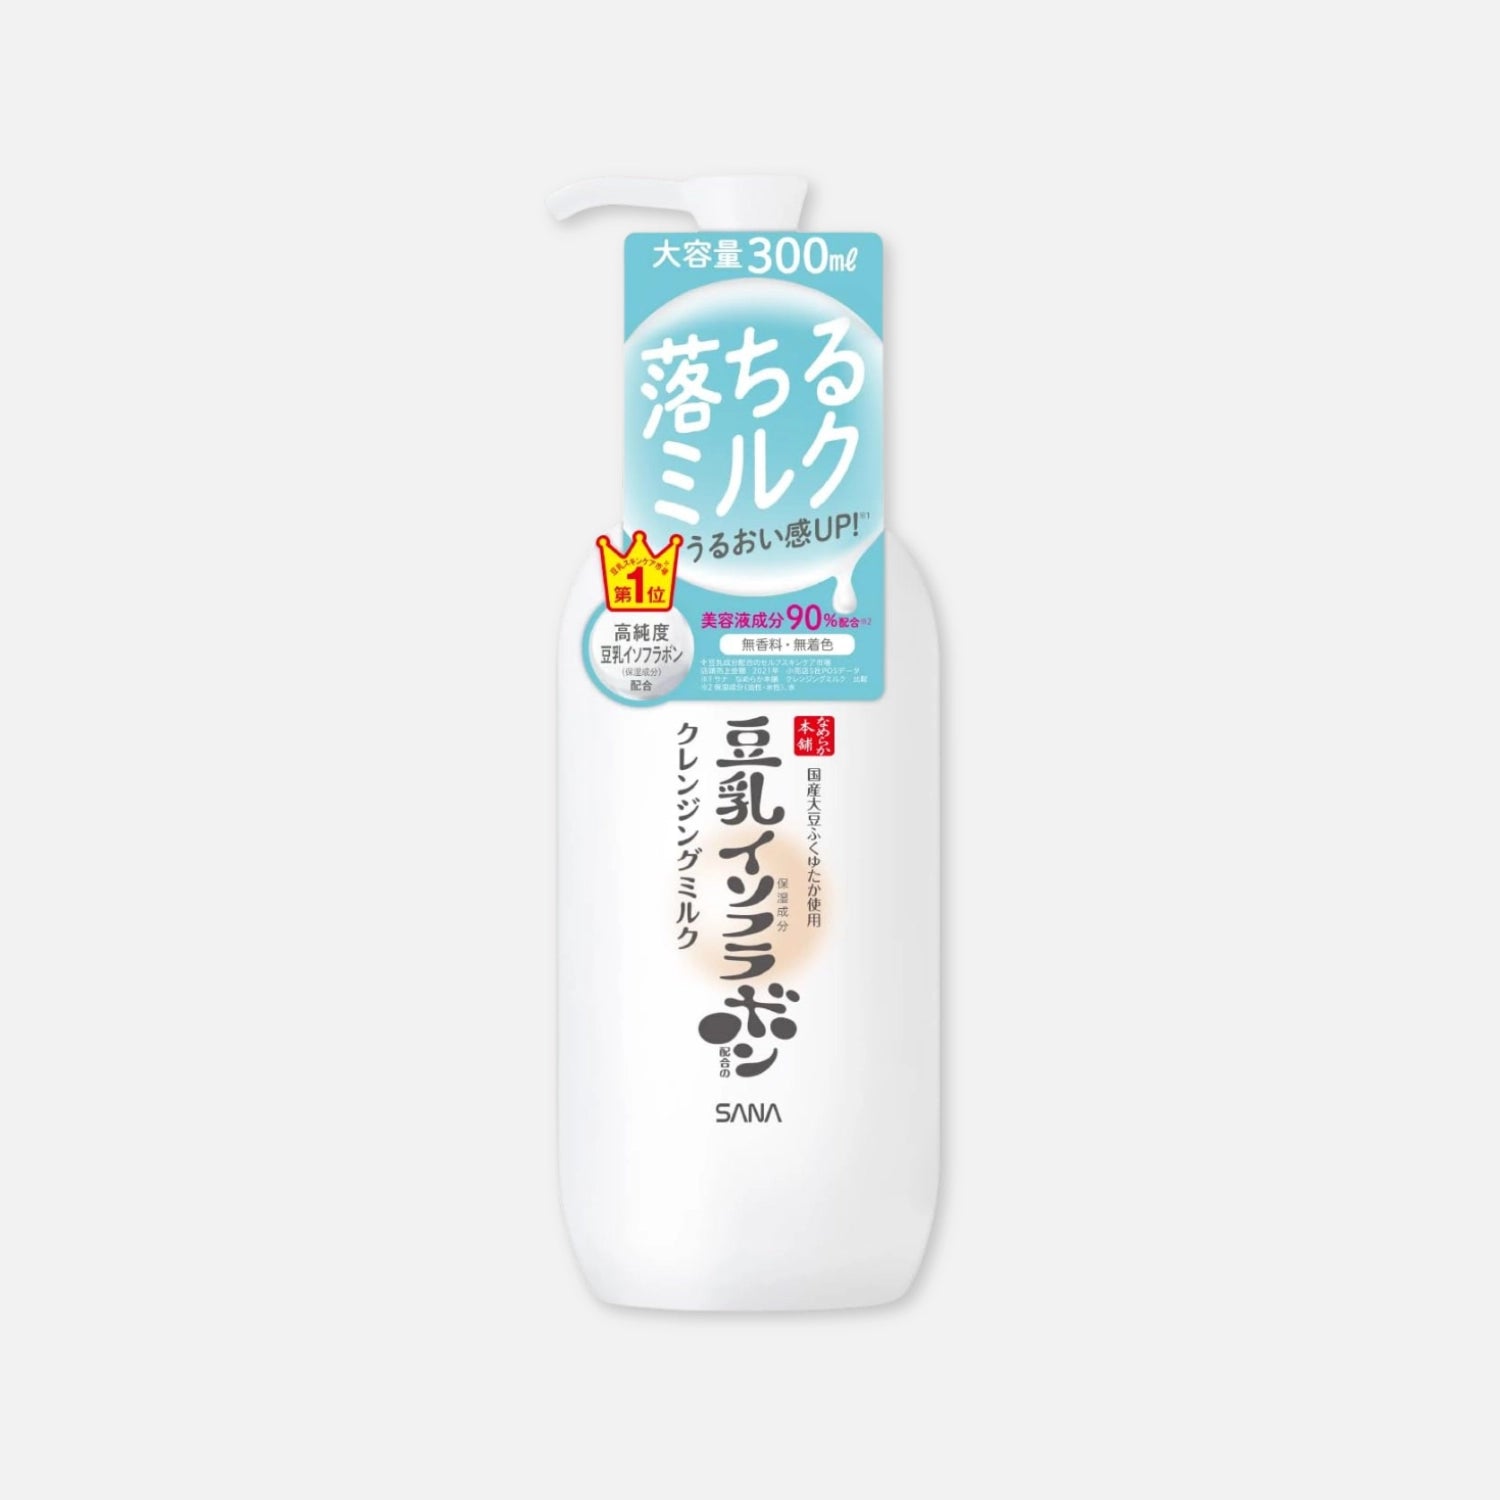 Sana Soy Isoflavones Cleansing Milky Lotion 300ml - Buy Me Japan